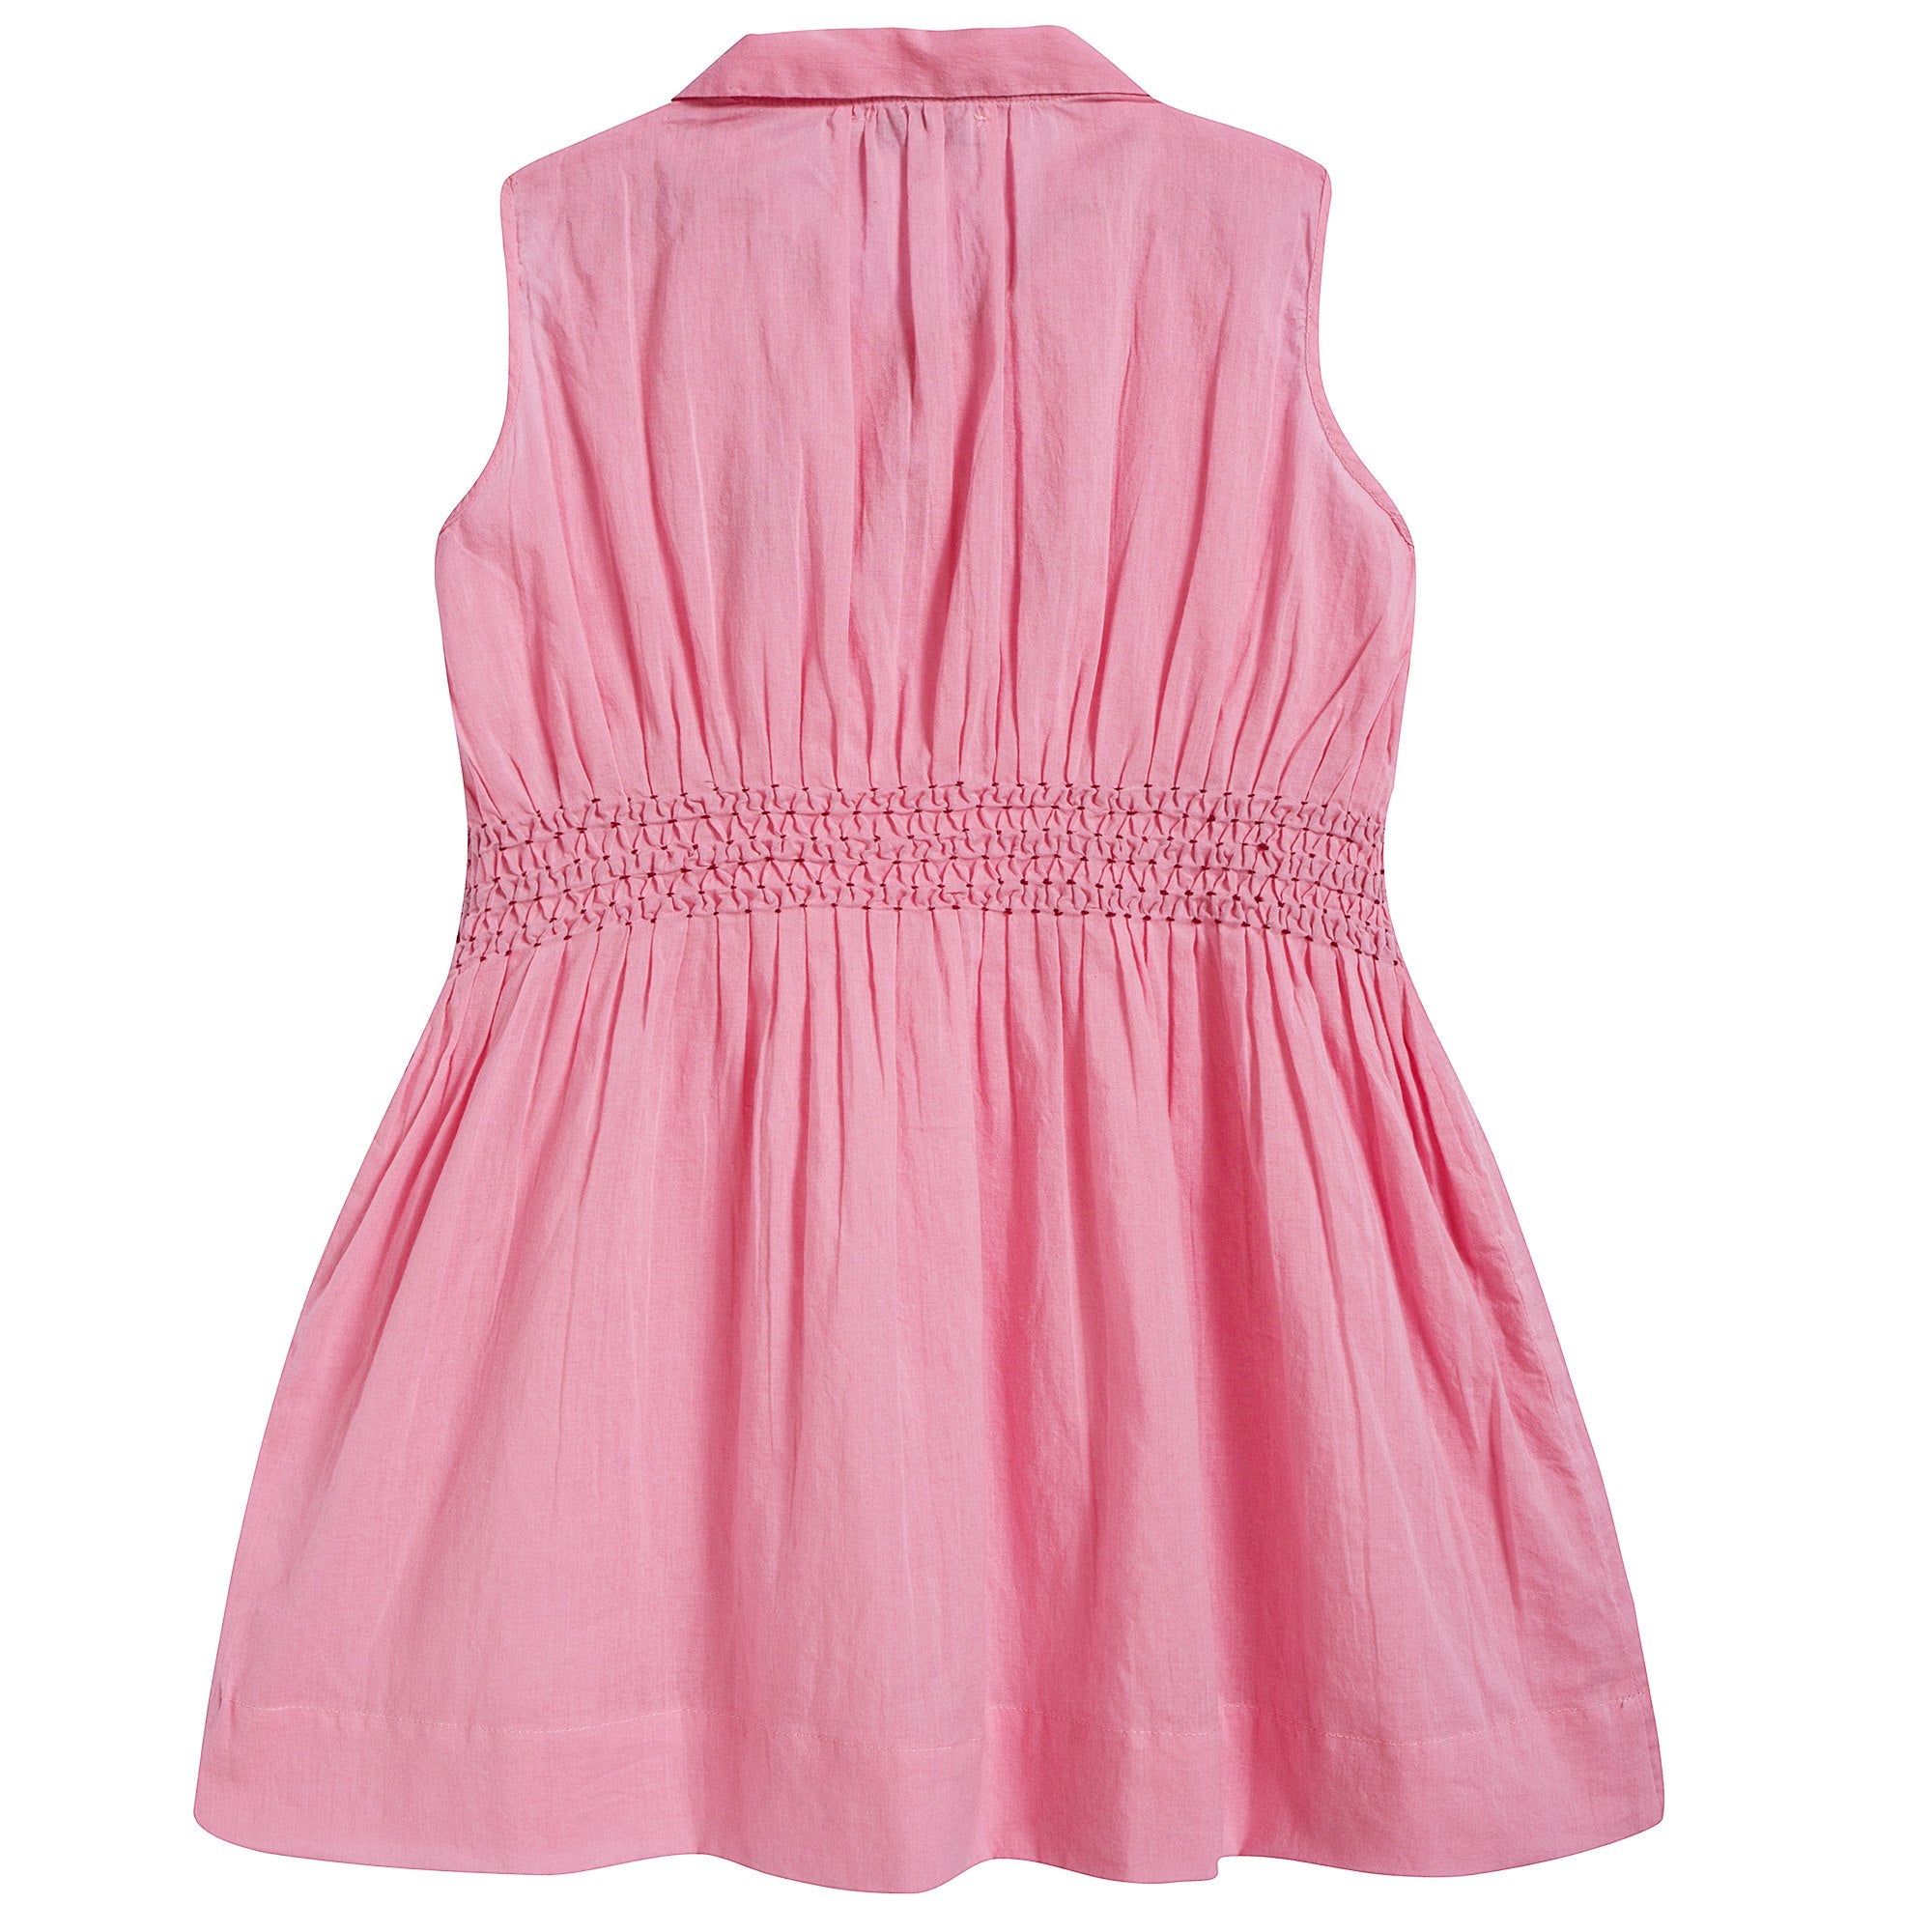 Girls Candy Pink Cotton Woven Dress